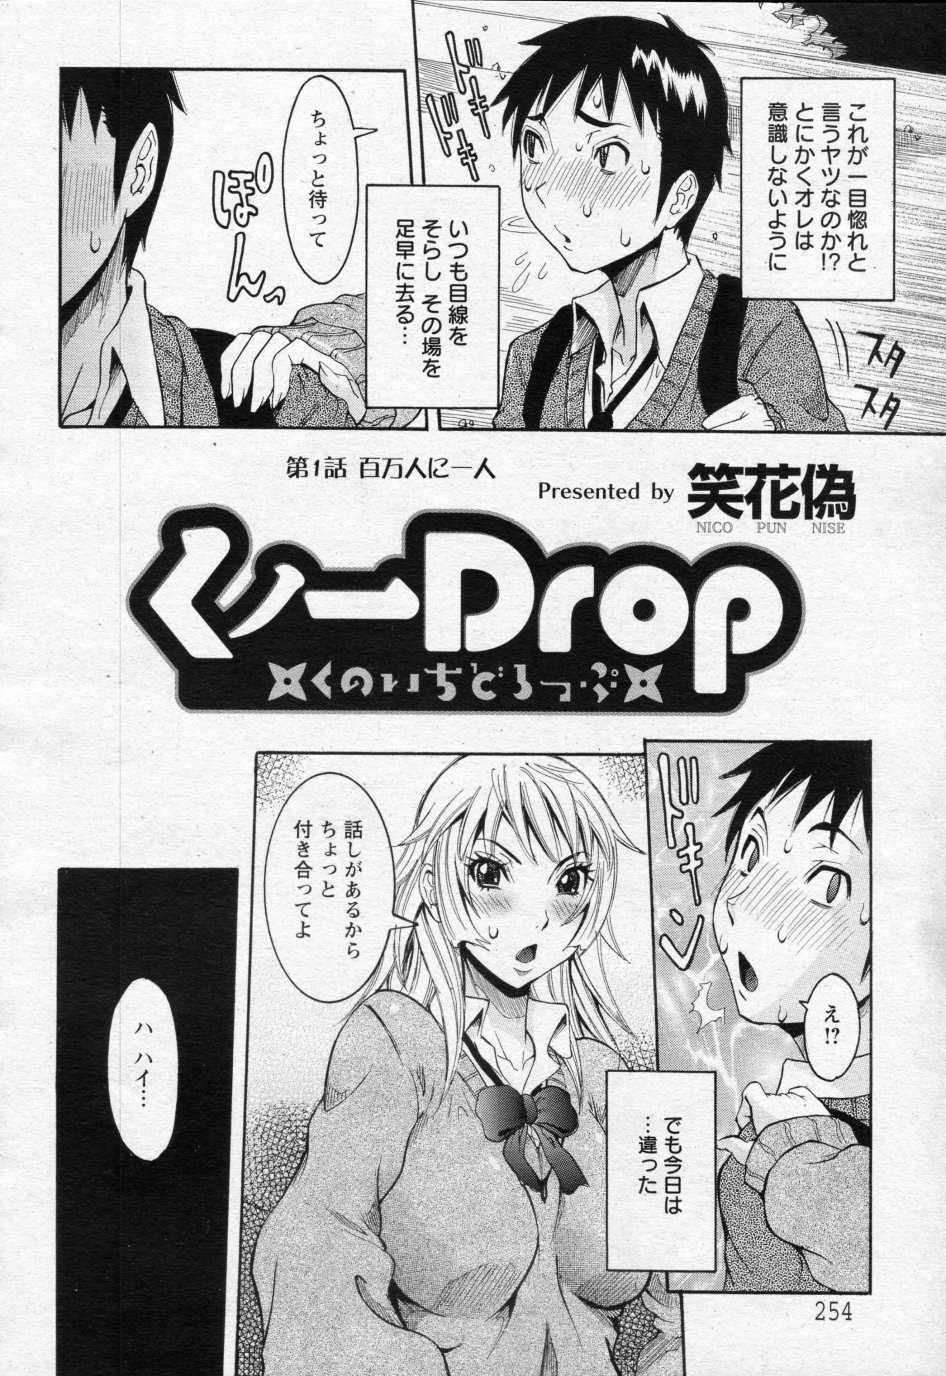 [Nico Pun Nise] Kunoichi Drop Ch.01-03 [笑花偽] くノ一Drop 第01-03話